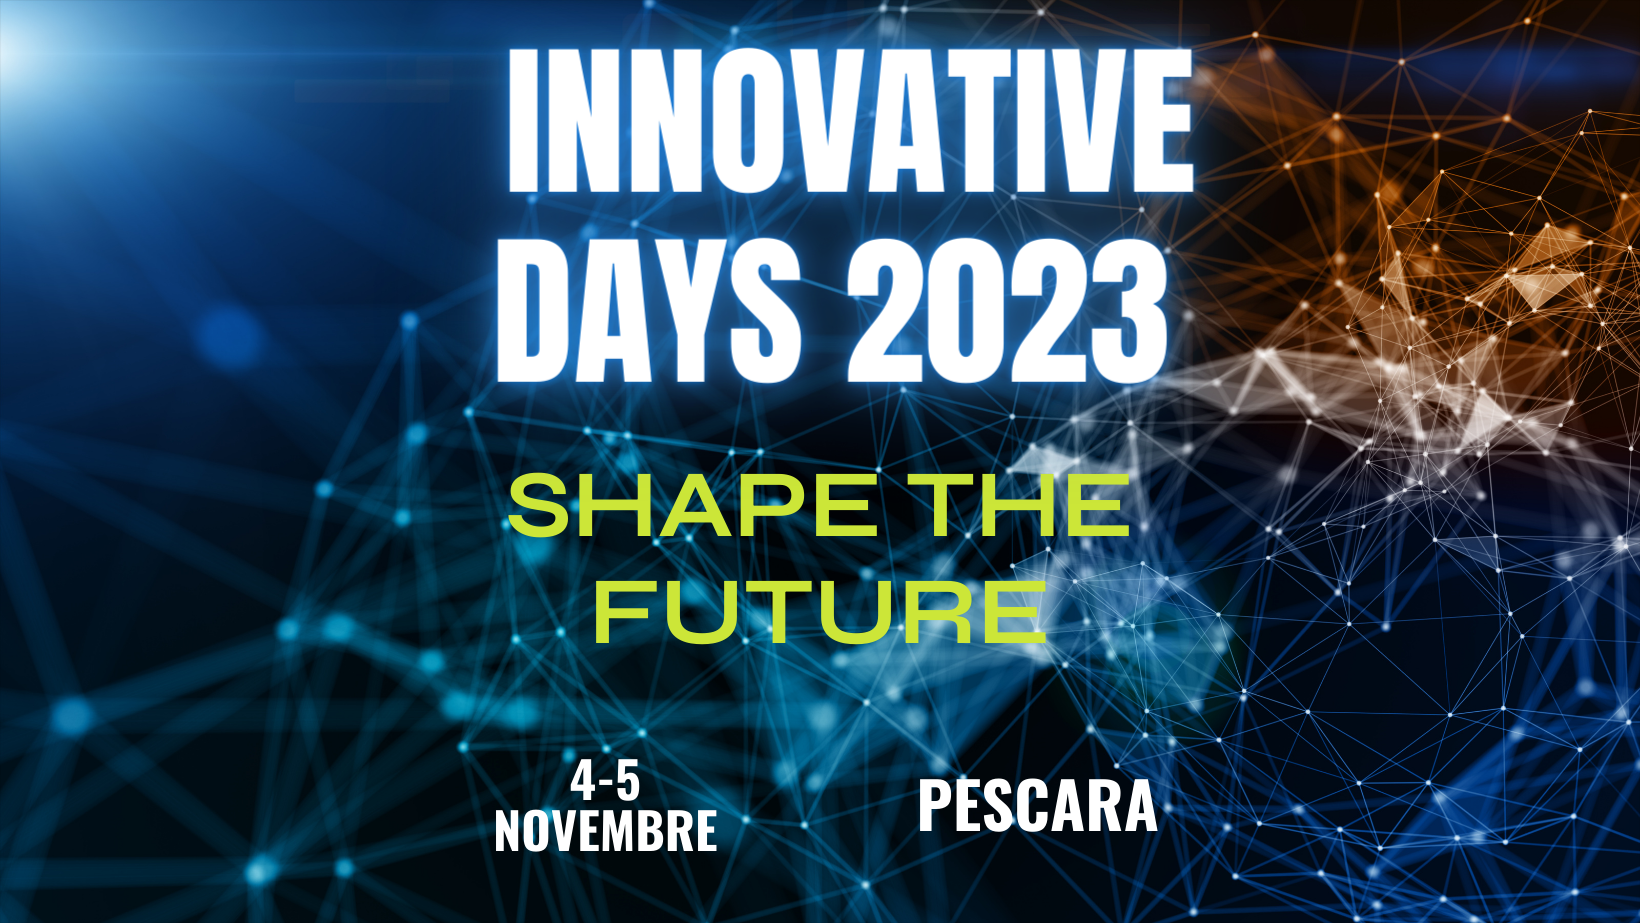 Innovative DAys 2023 Pescara